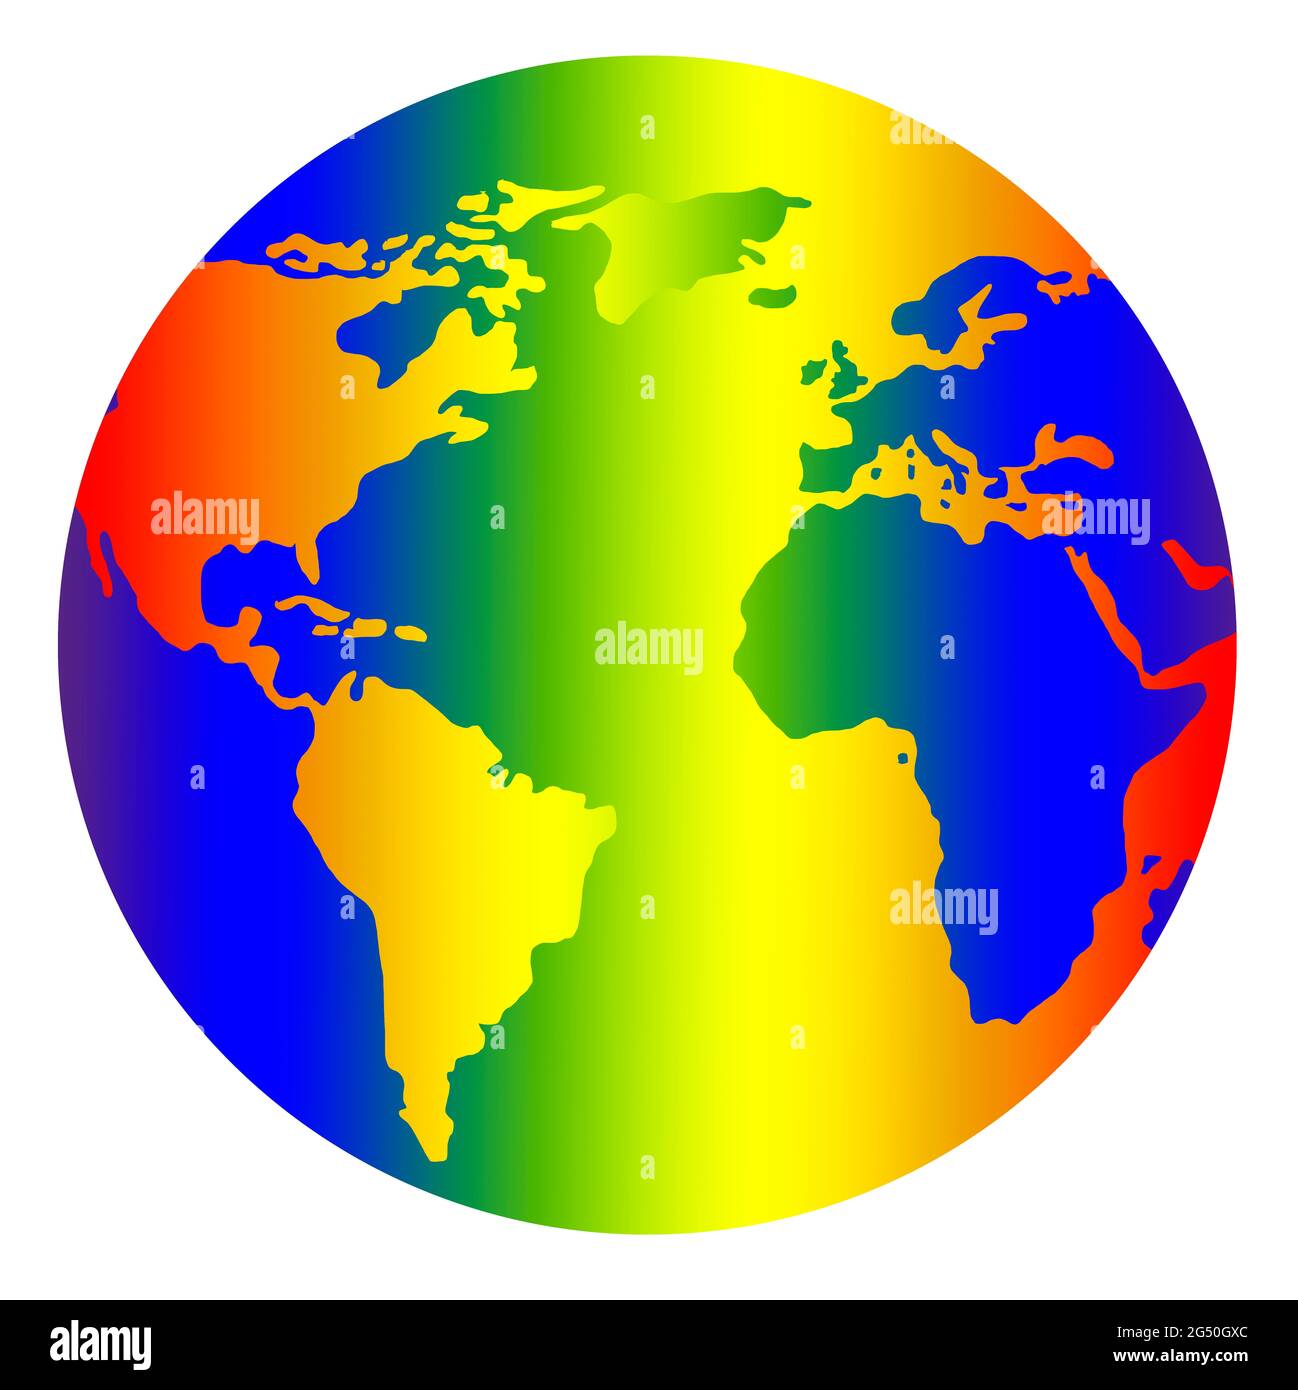 Die Erde in Regenbogen Farben - Symbol für mehr Toleranz Banque D'Images